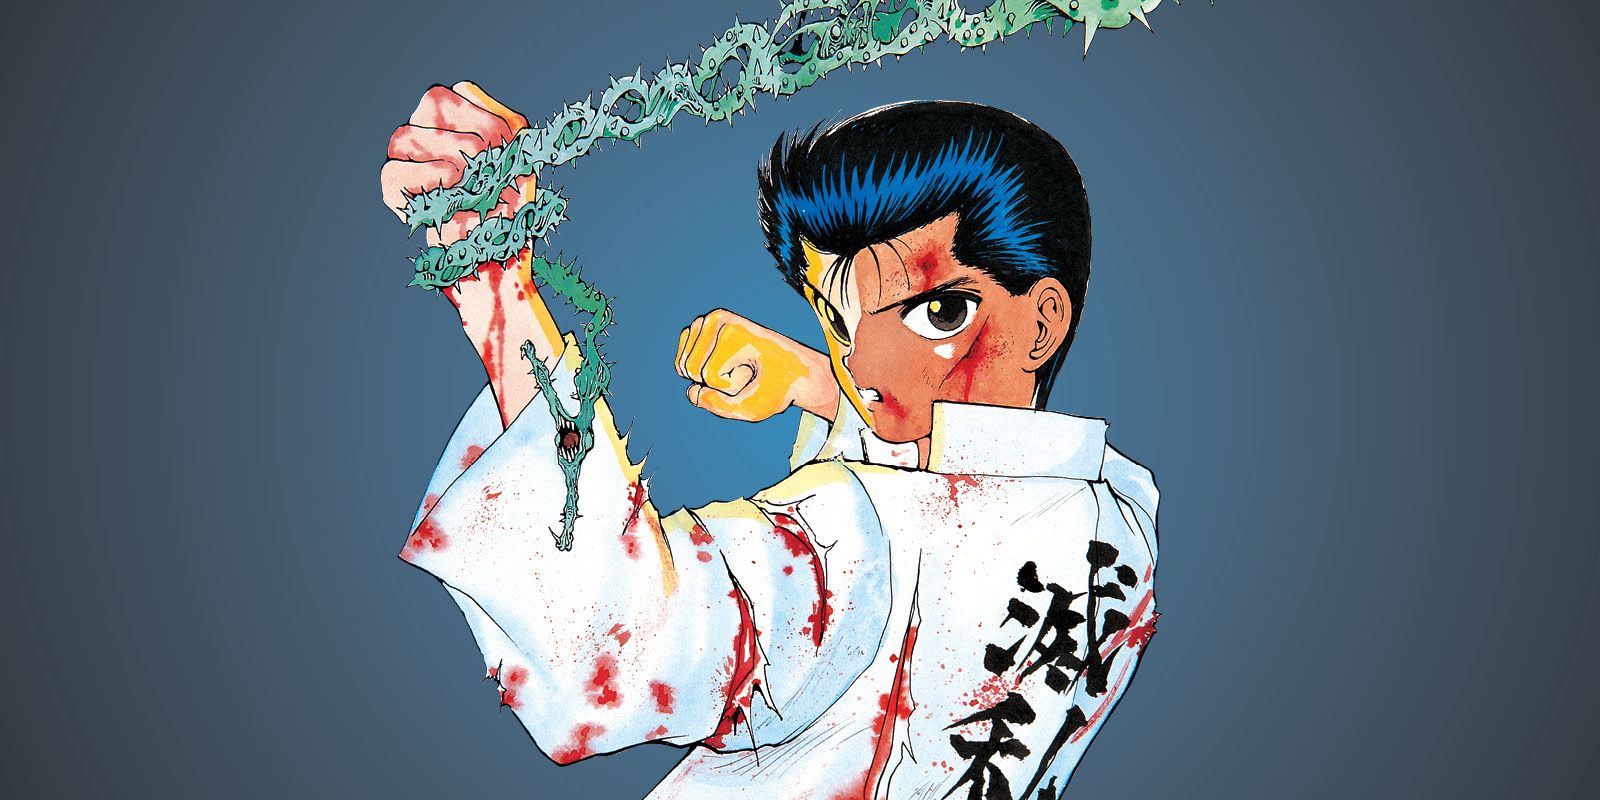 Yusuke from Yu Yu Hakusho's manga.